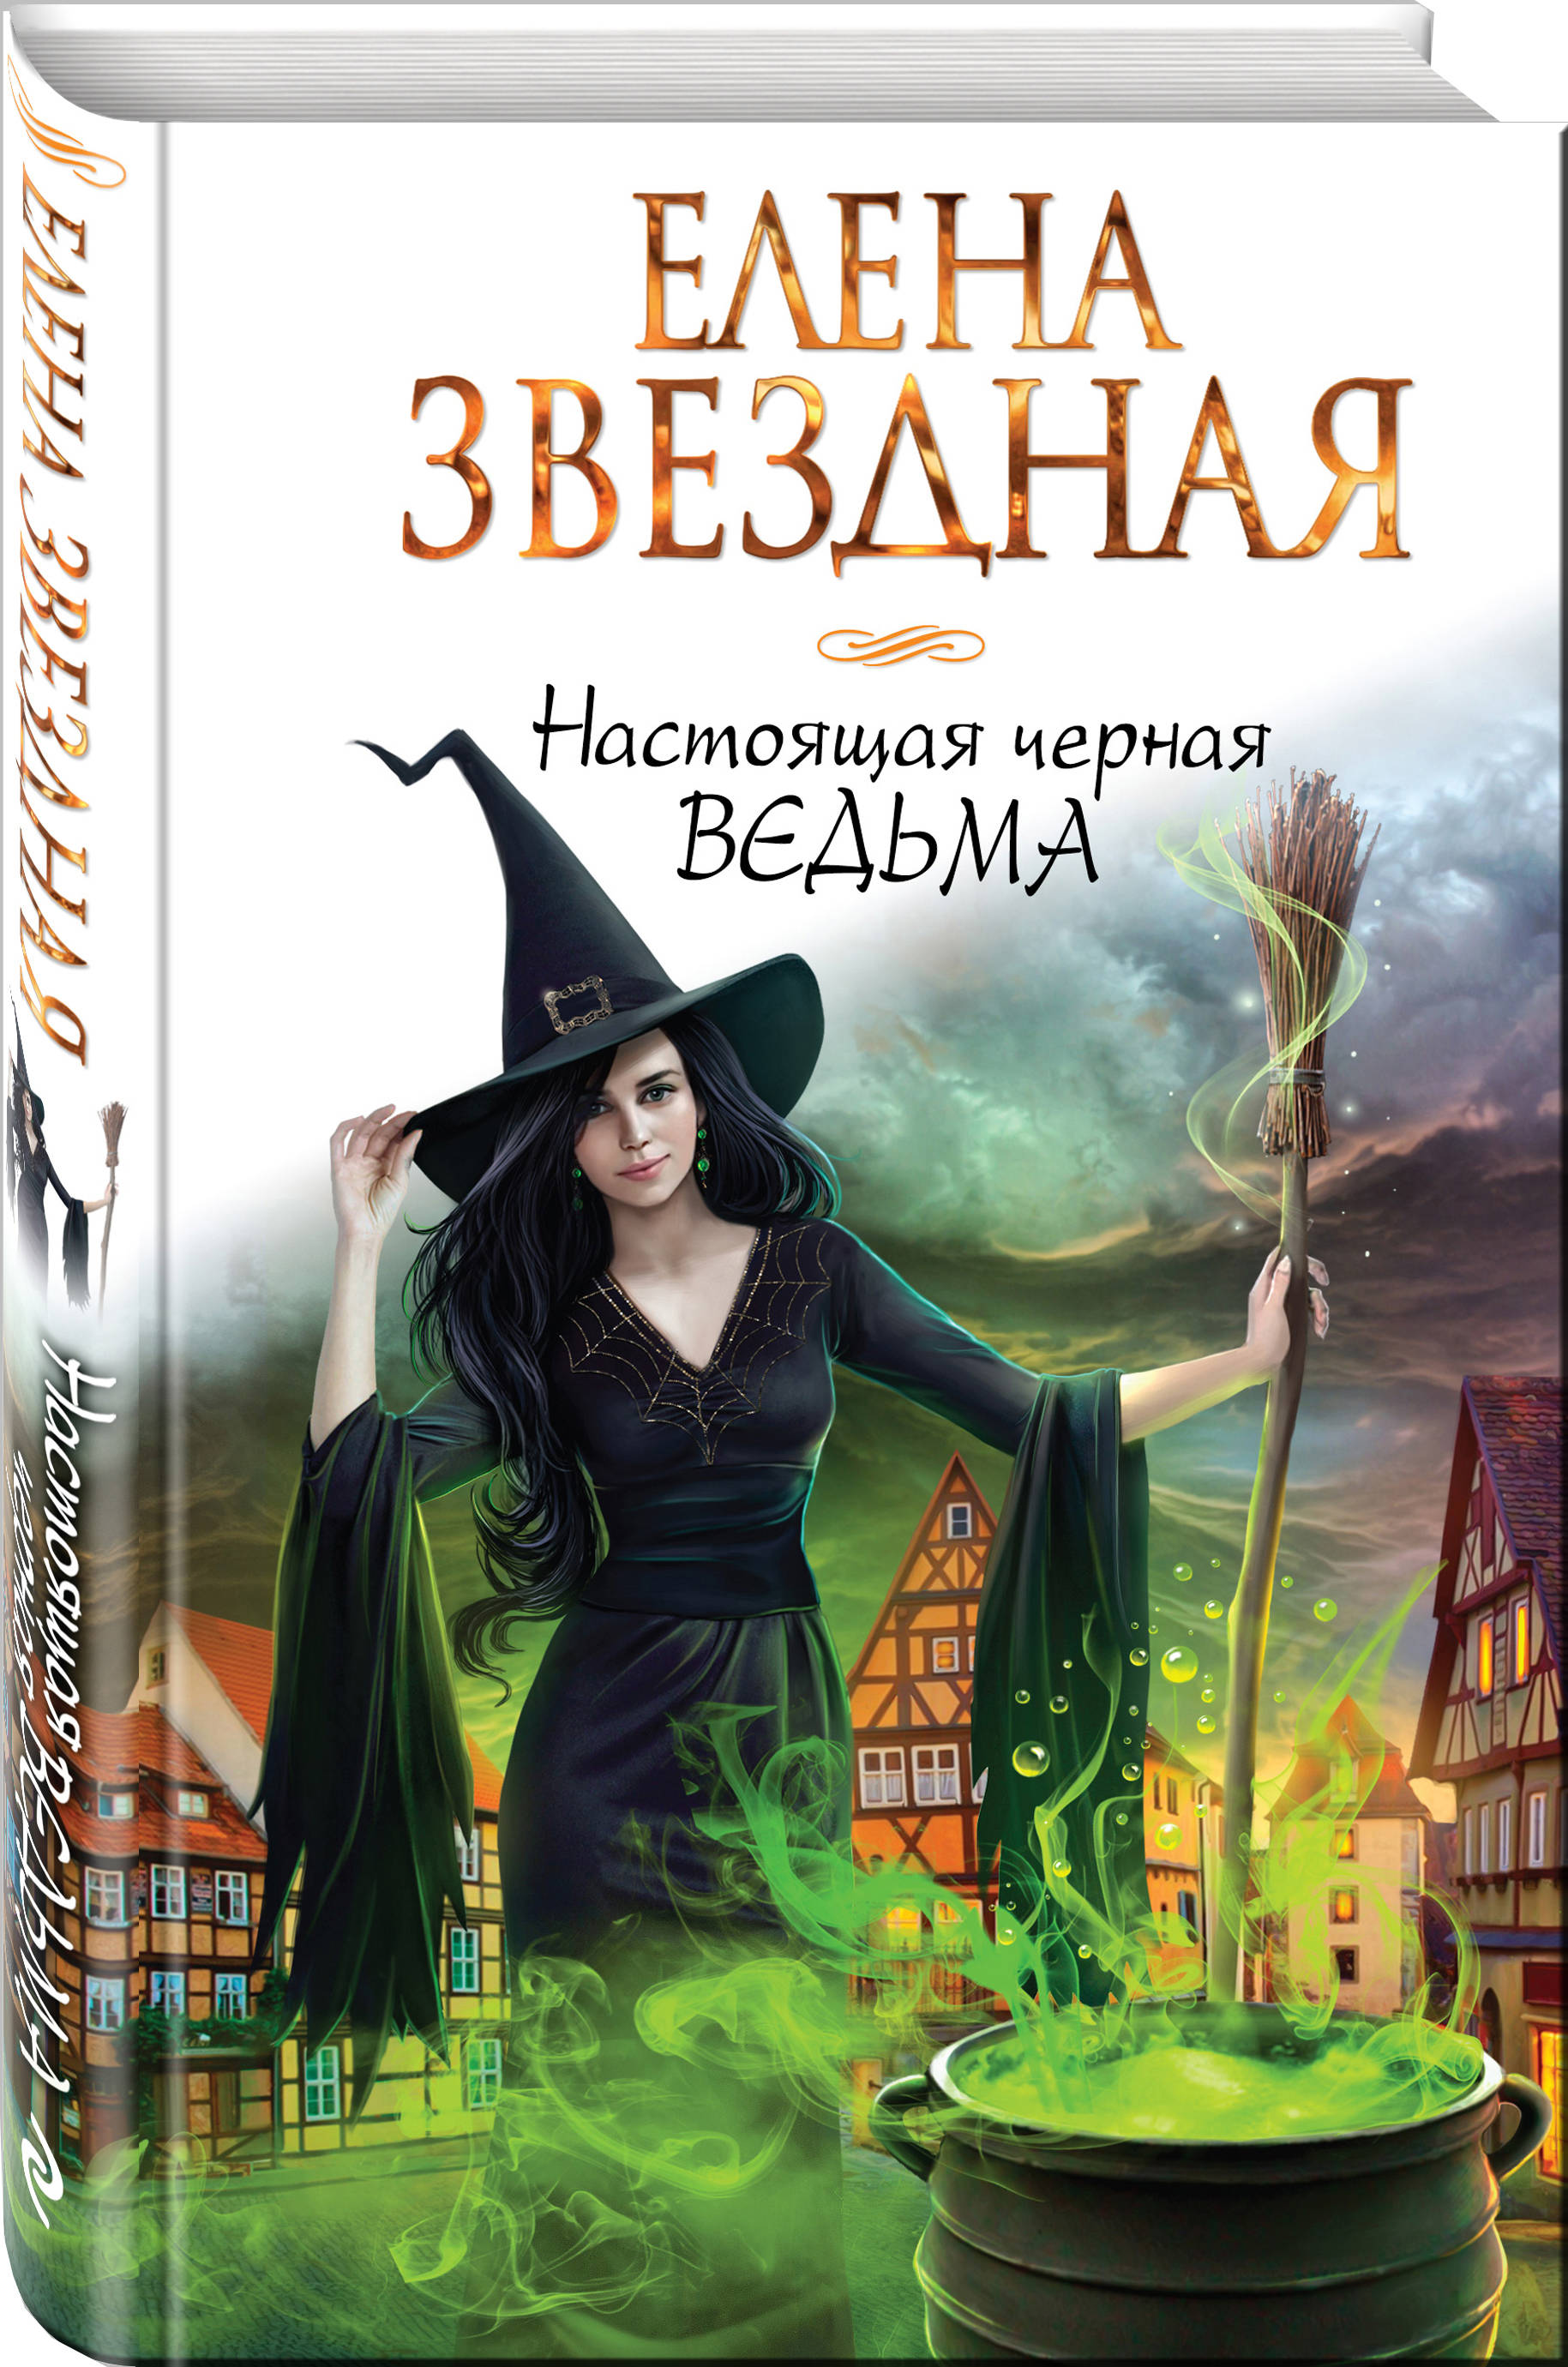 Книги про академии ведьм